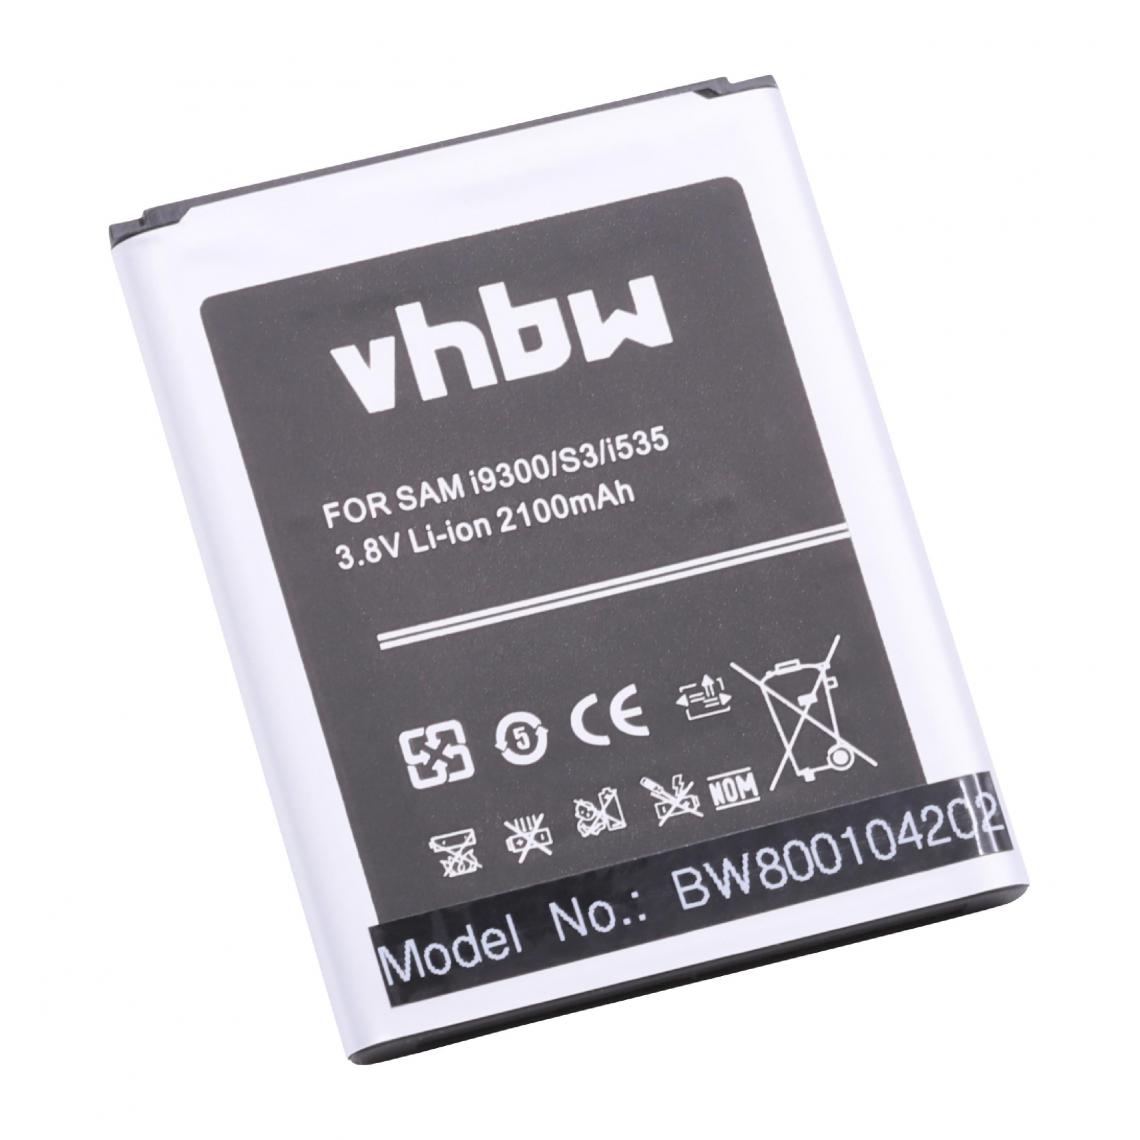 Vhbw - vhbw Batterie remplacement pour Samsung EB-L1G6LLZ, EB-L1G6LVA pour smartphone (2100mAh, 3,8V, Li-ion) avec NFC - Batterie téléphone